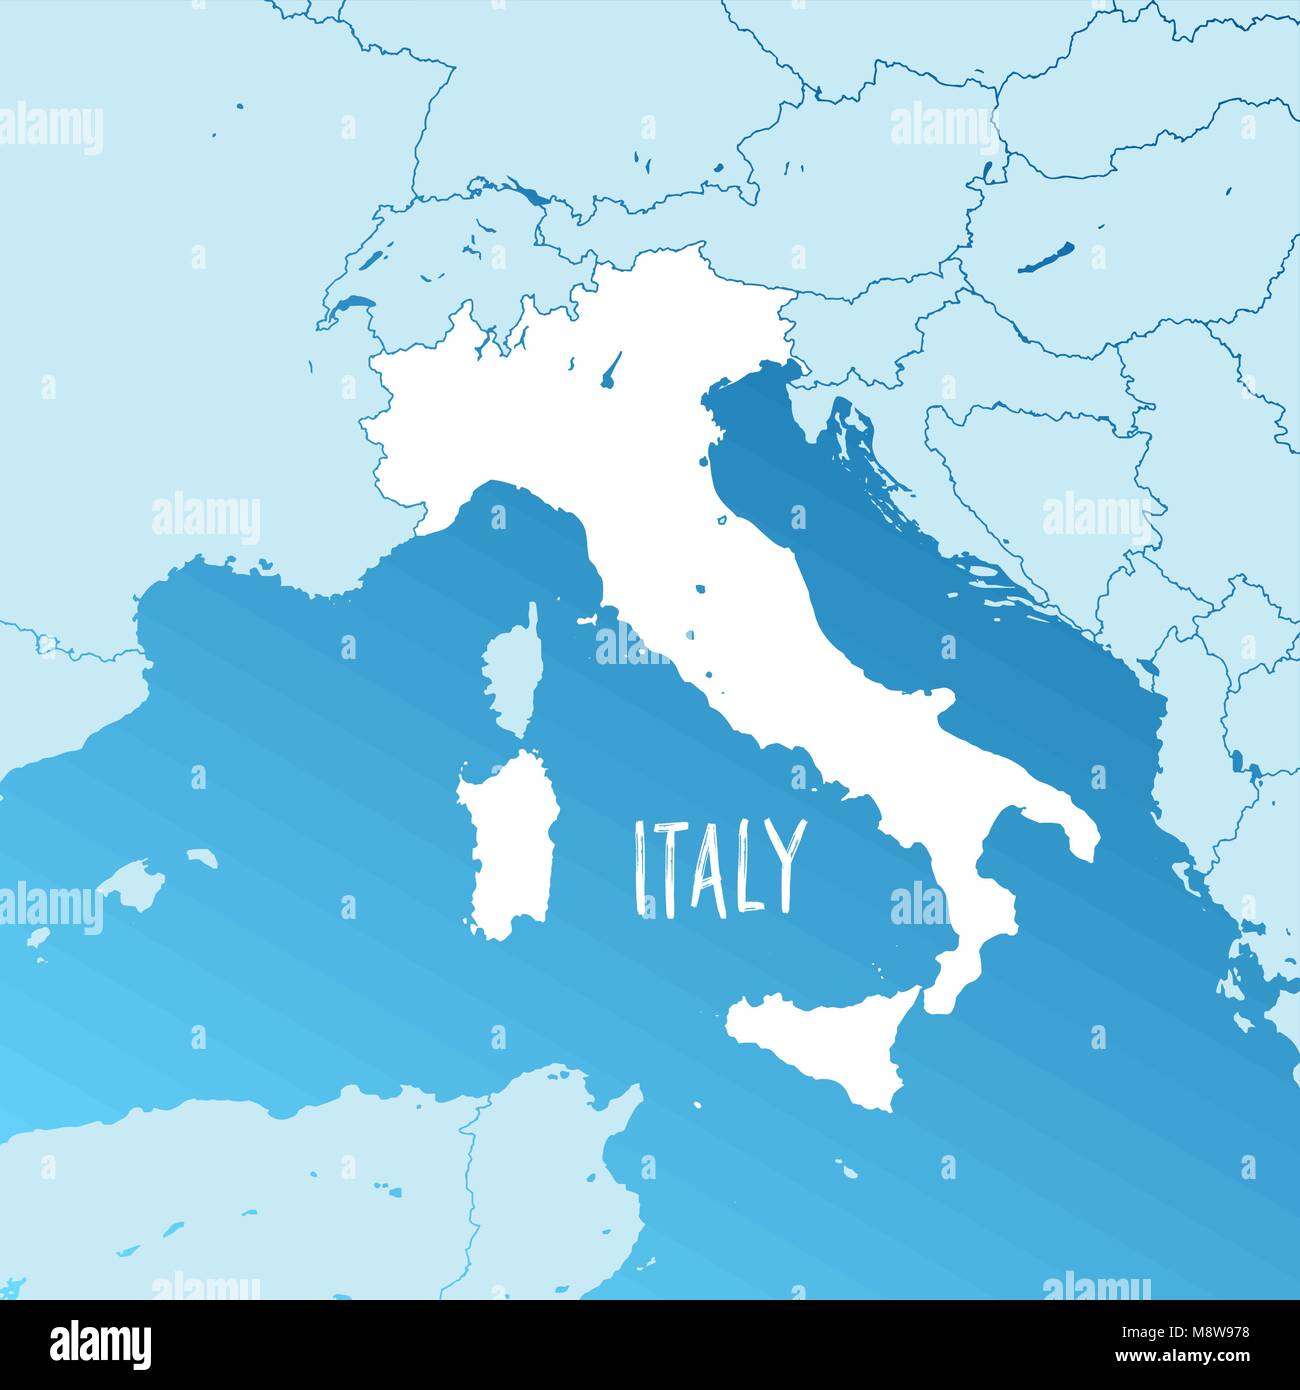 Italia mappa vettoriale. Due tonalità versione Silhouette. Ricchezza di dettagli per i confini, vicini di casa e le isole. Utilizzabile per travel marketing immobiliare e educazione Illustrazione Vettoriale